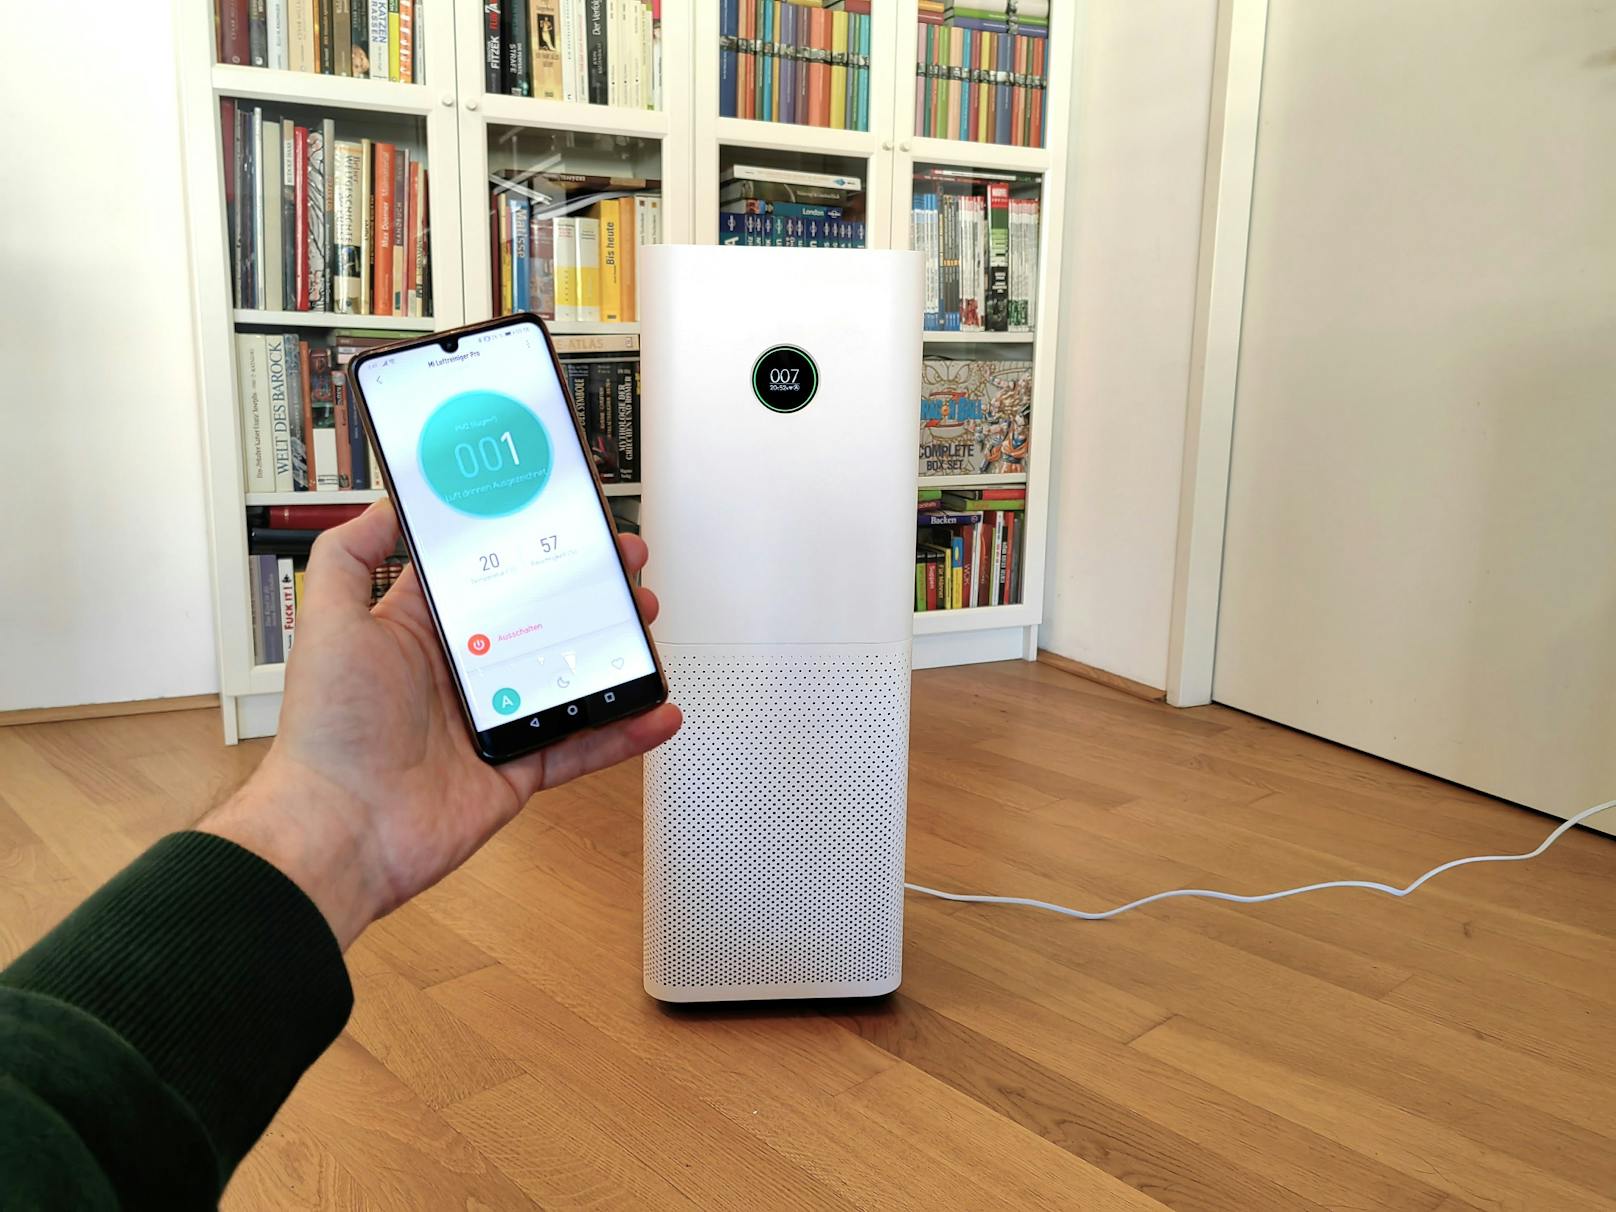 ...&nbsp;"Xiaomi Home"-App, sondern auch bei der Kontrolle über separate Messgeräte zur Kontrolle der Luftqualität. Außerdem zeigt sich die Bedienung äußerst simpel.